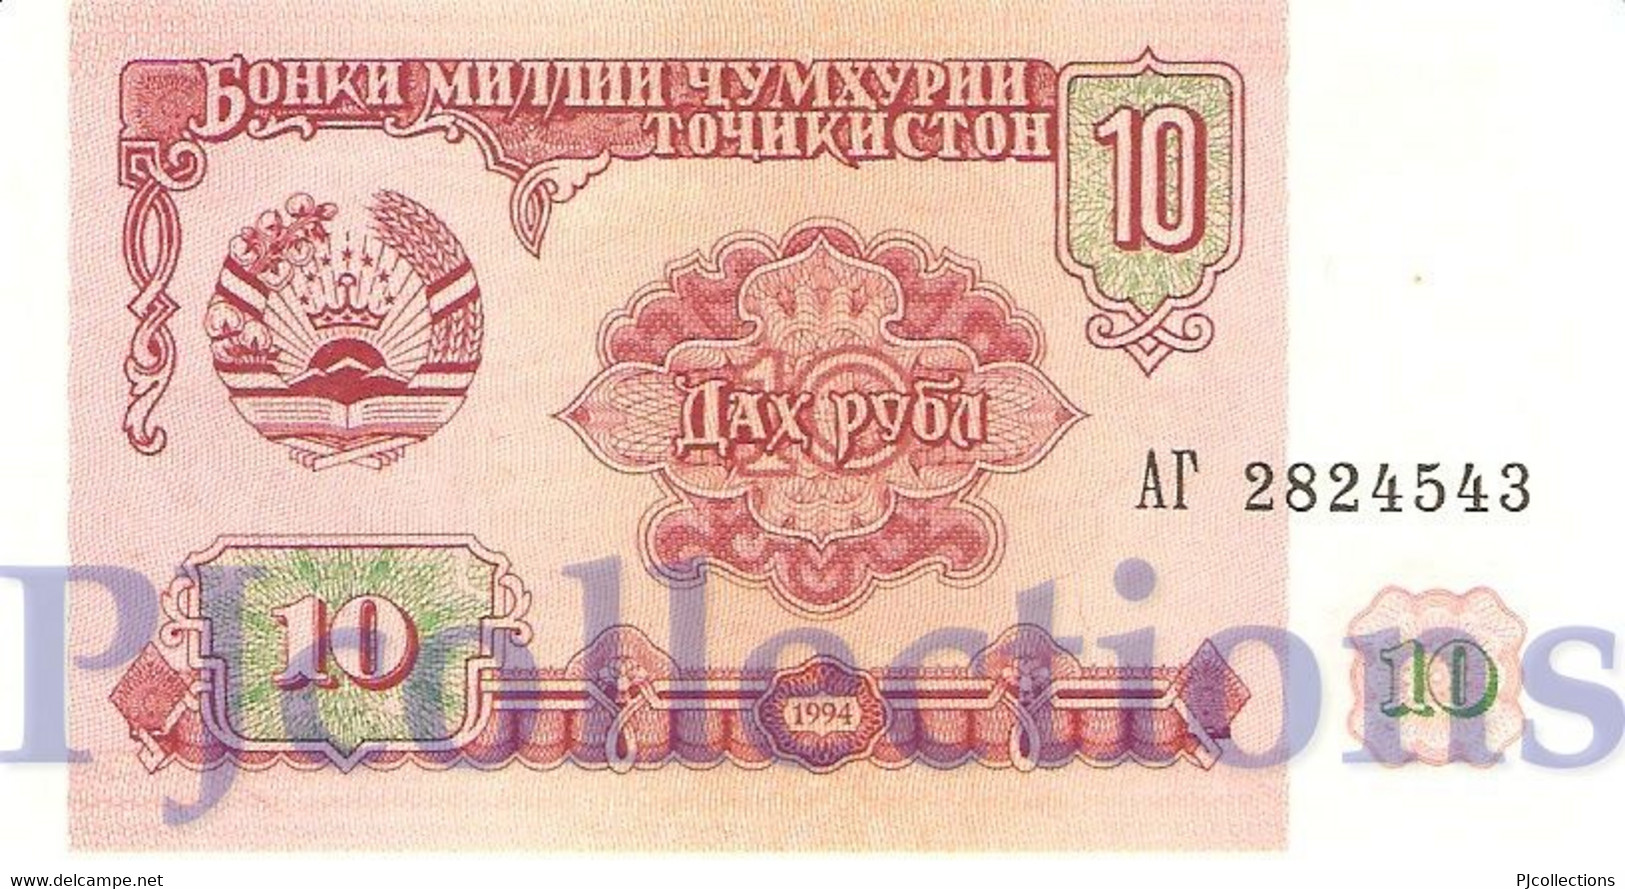 TAJIKISTAN 10 RUBLES 1994 PICK 3a UNC - Tajikistan